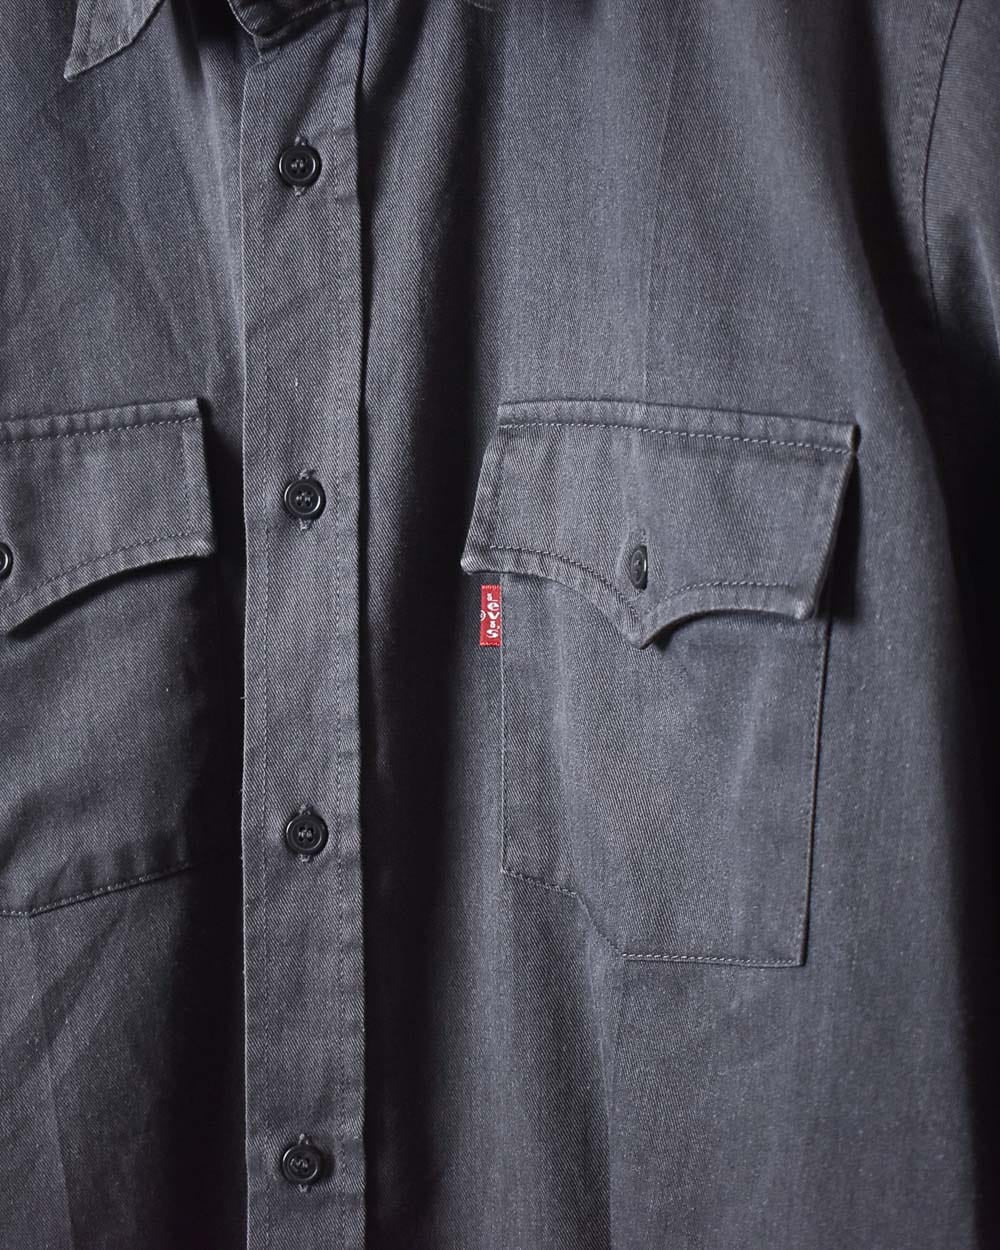 Grey Levi's Double Pocket Shirt - X-Large